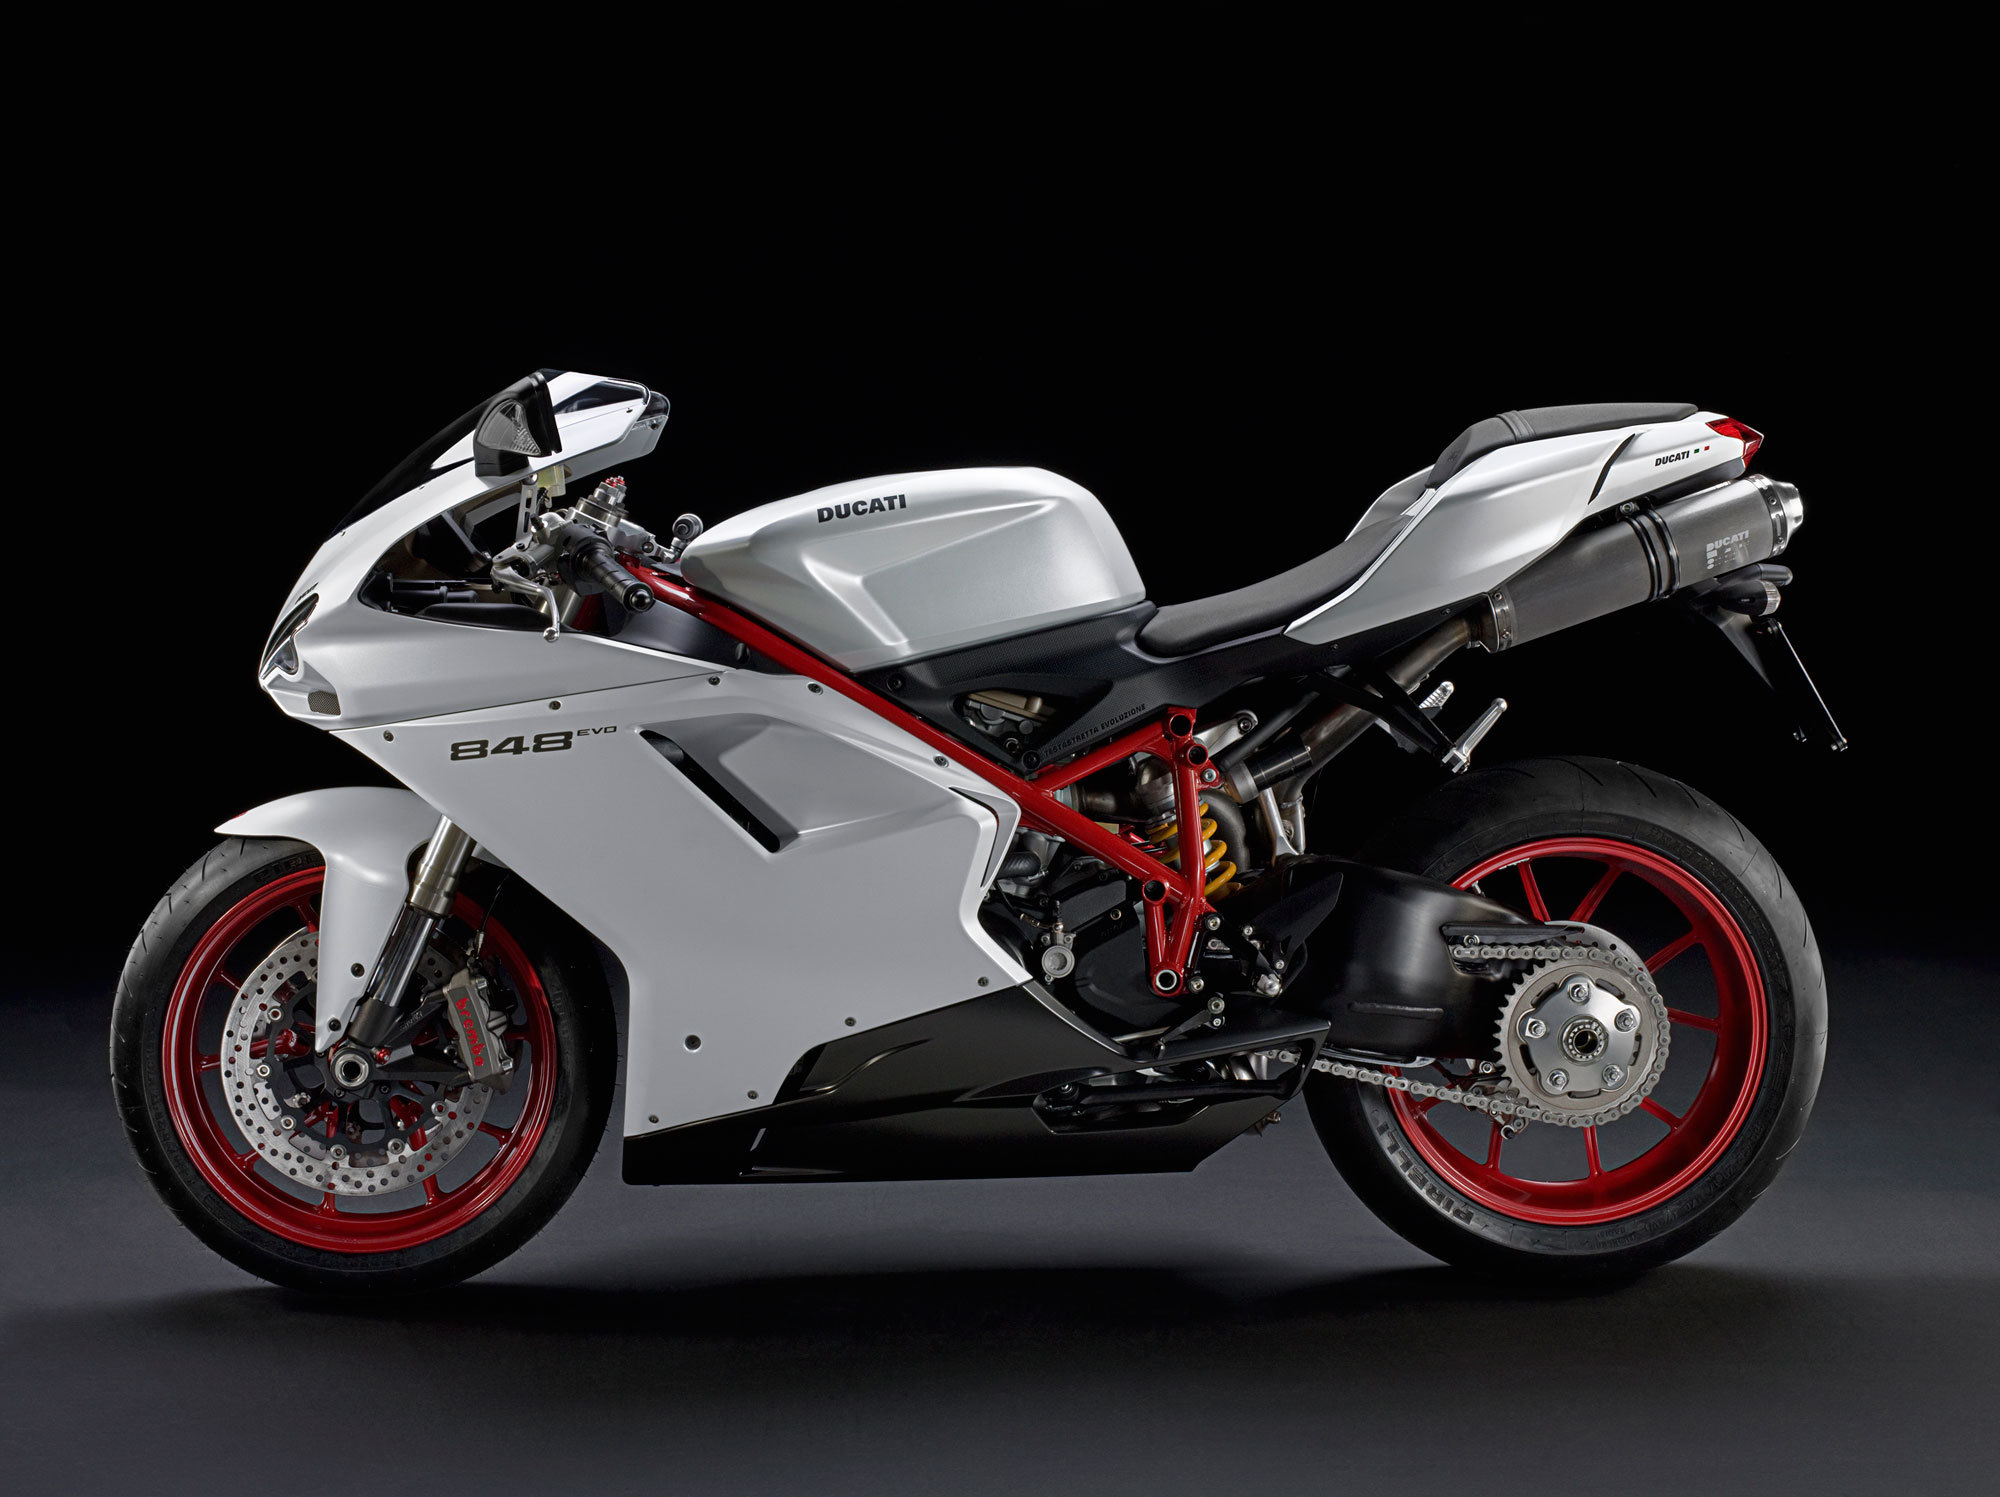 Télécharger des fonds d'écran Ducati Superbike 848 Evo HD